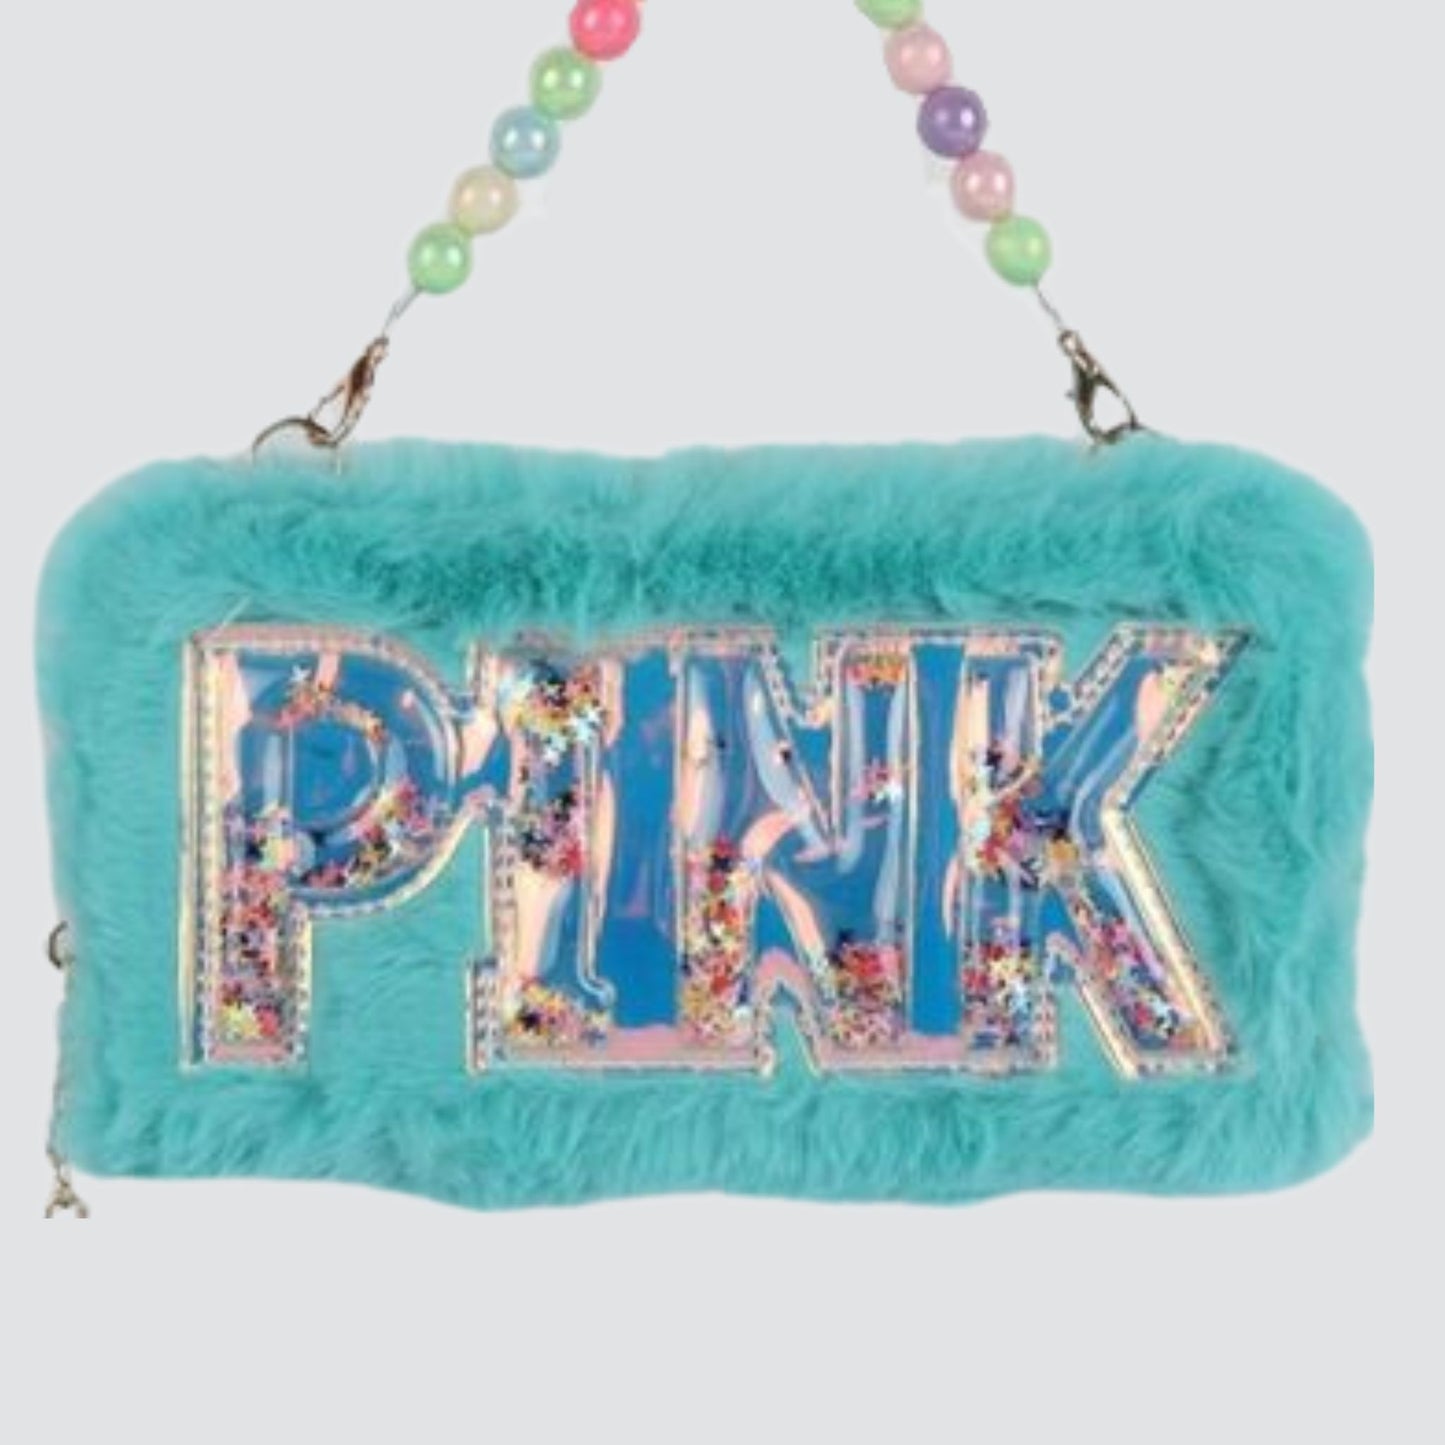 S3006 Fluffy PINK Wallet / Handbag